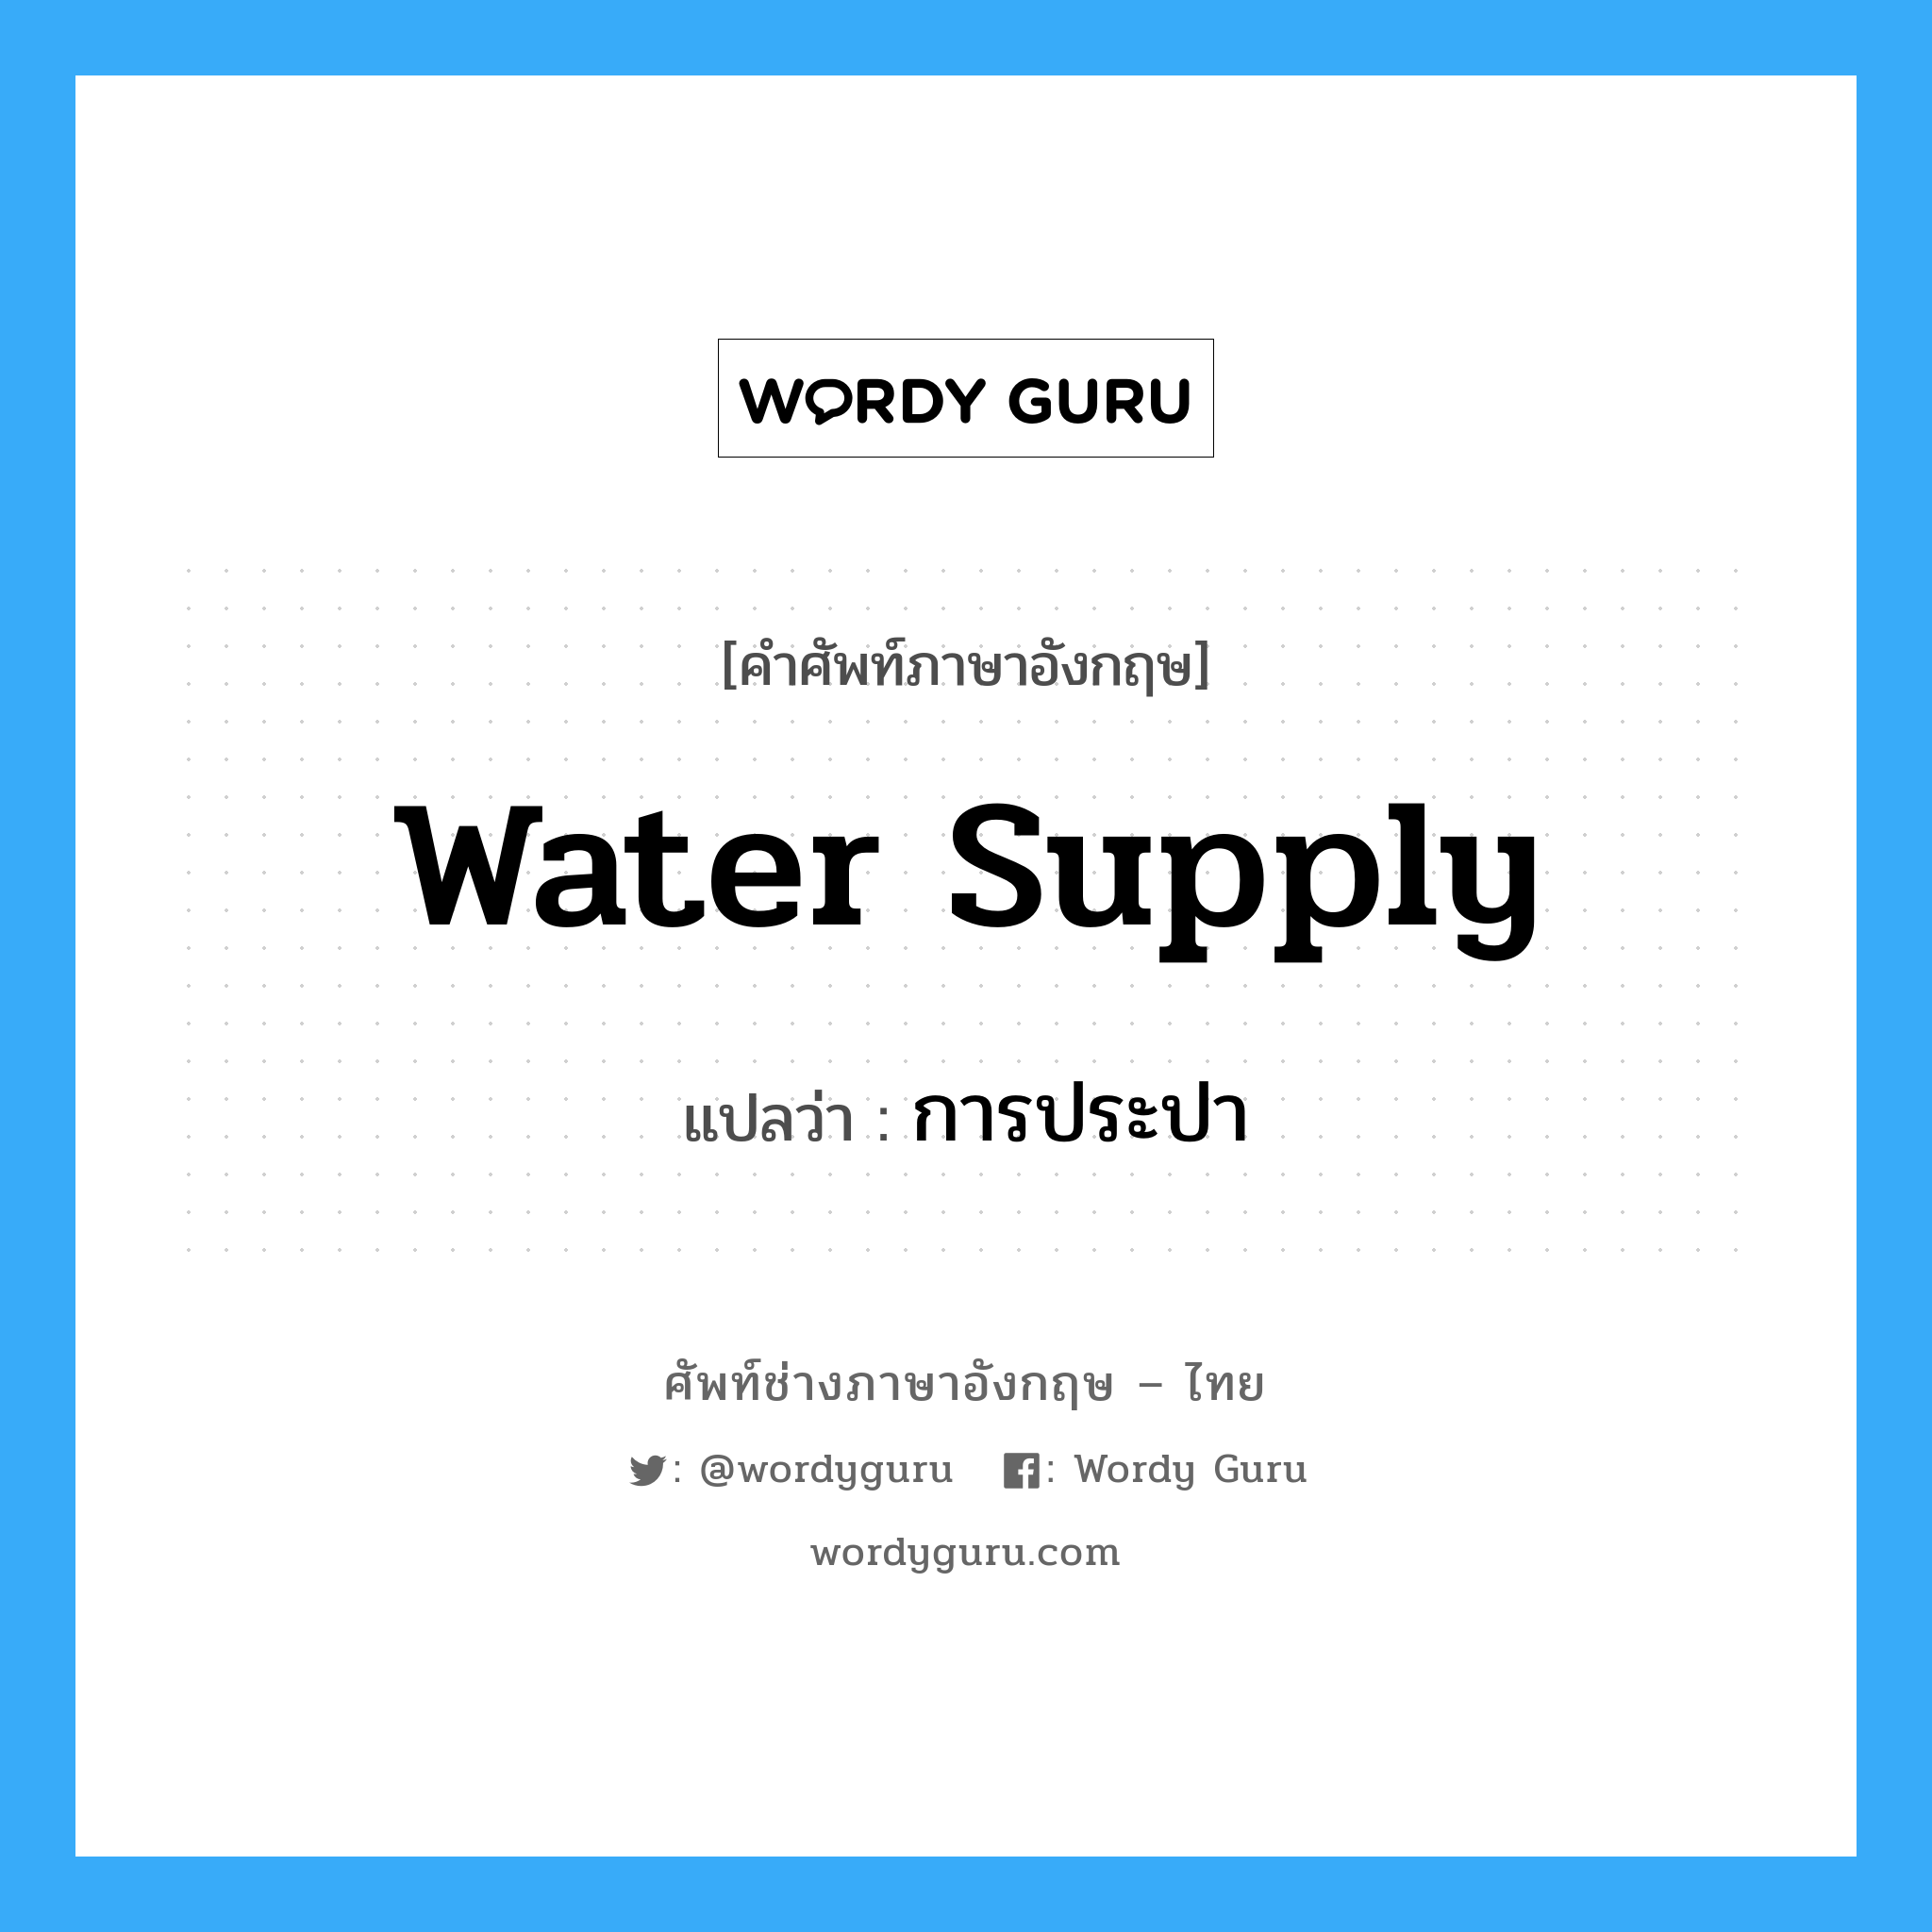 water supply แปลว่า?, คำศัพท์ช่างภาษาอังกฤษ - ไทย water supply คำศัพท์ภาษาอังกฤษ water supply แปลว่า การประปา